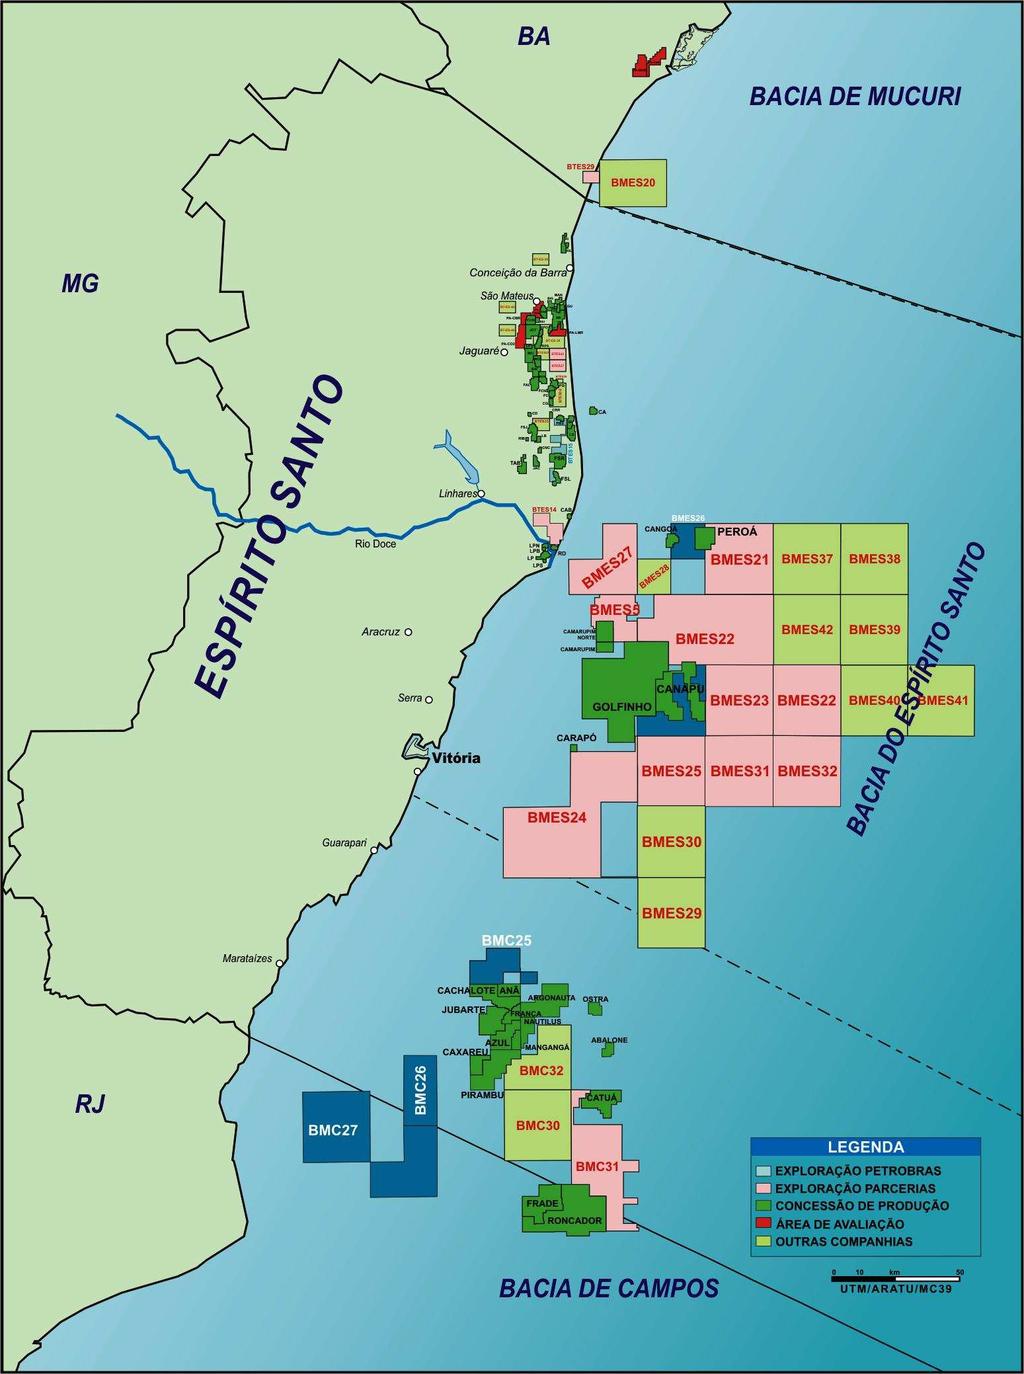 74 A UO-ES responde pelas atividades de exploração e produção de petróleo e gás natural na Bacia do Espírito Santo, incluindo a parte norte da Bacia de Campos, em frente ao litoral capixaba, e a